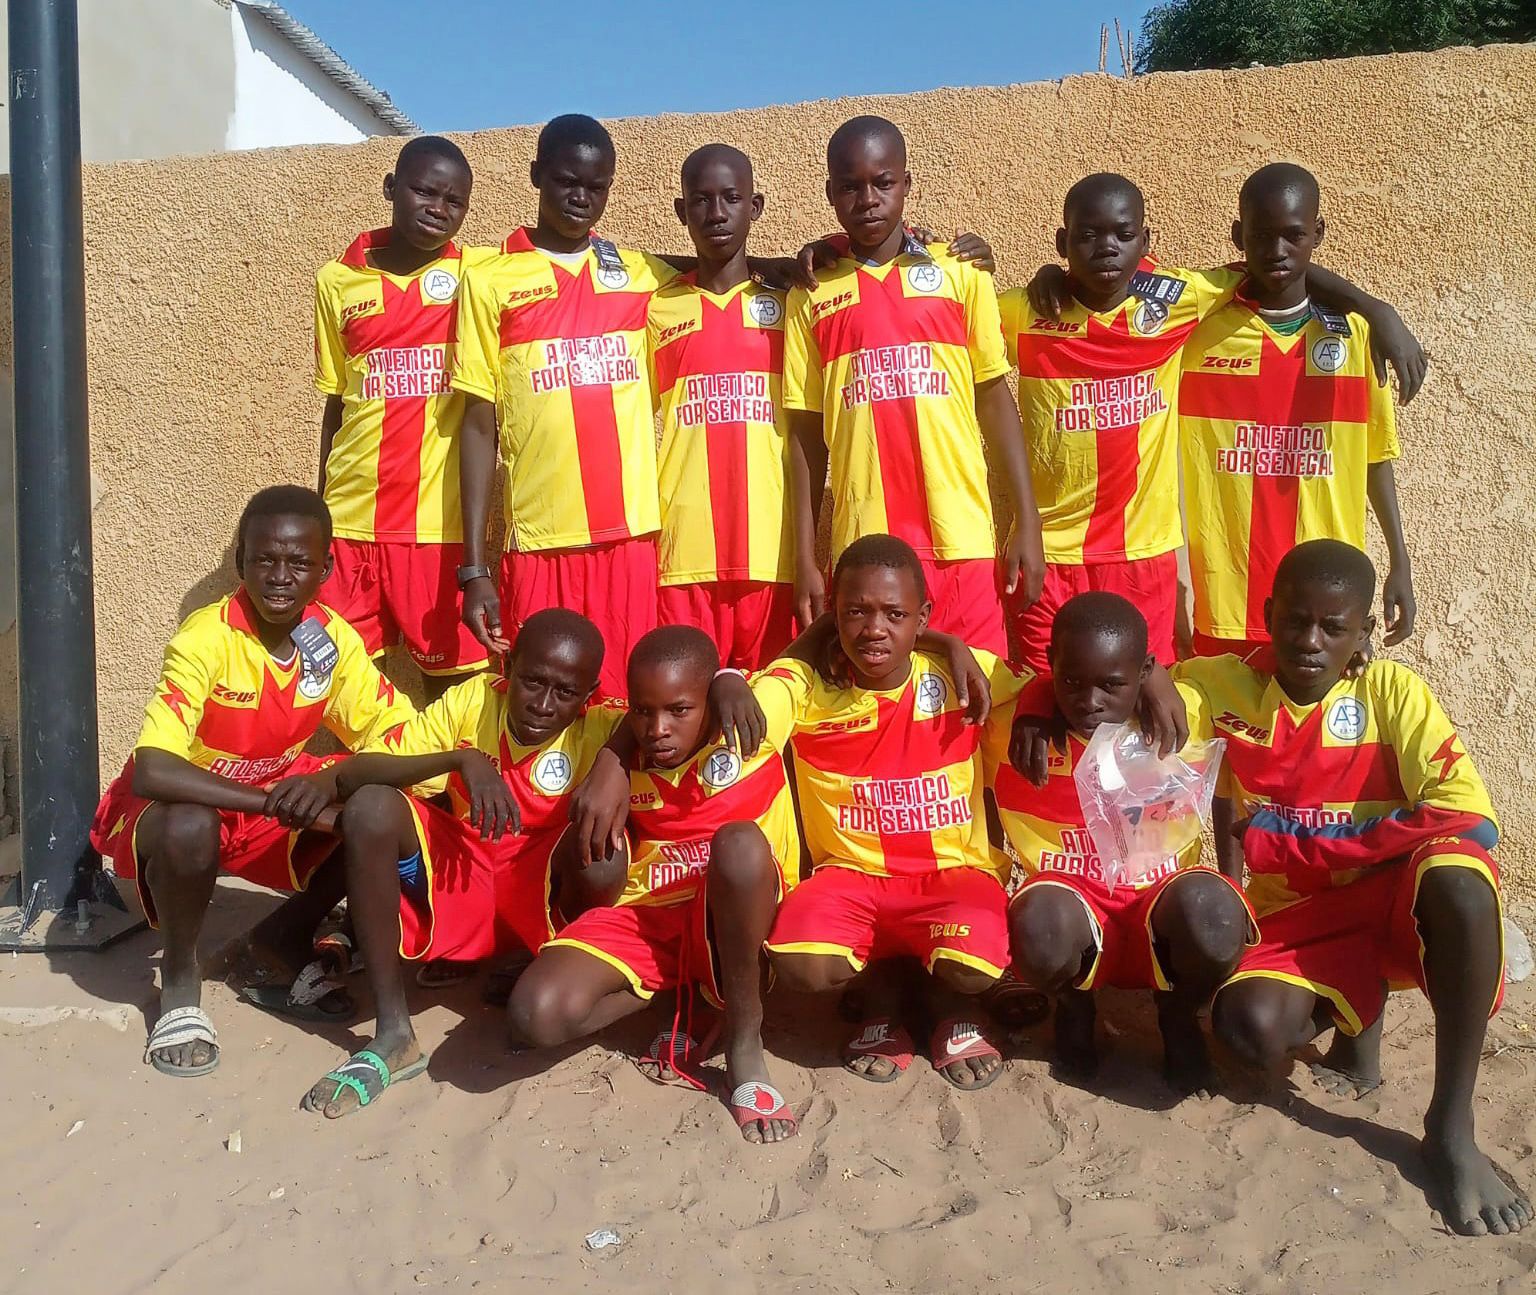 “Atletico for Senegal”: Battipaglia e Africa unite nel sociale